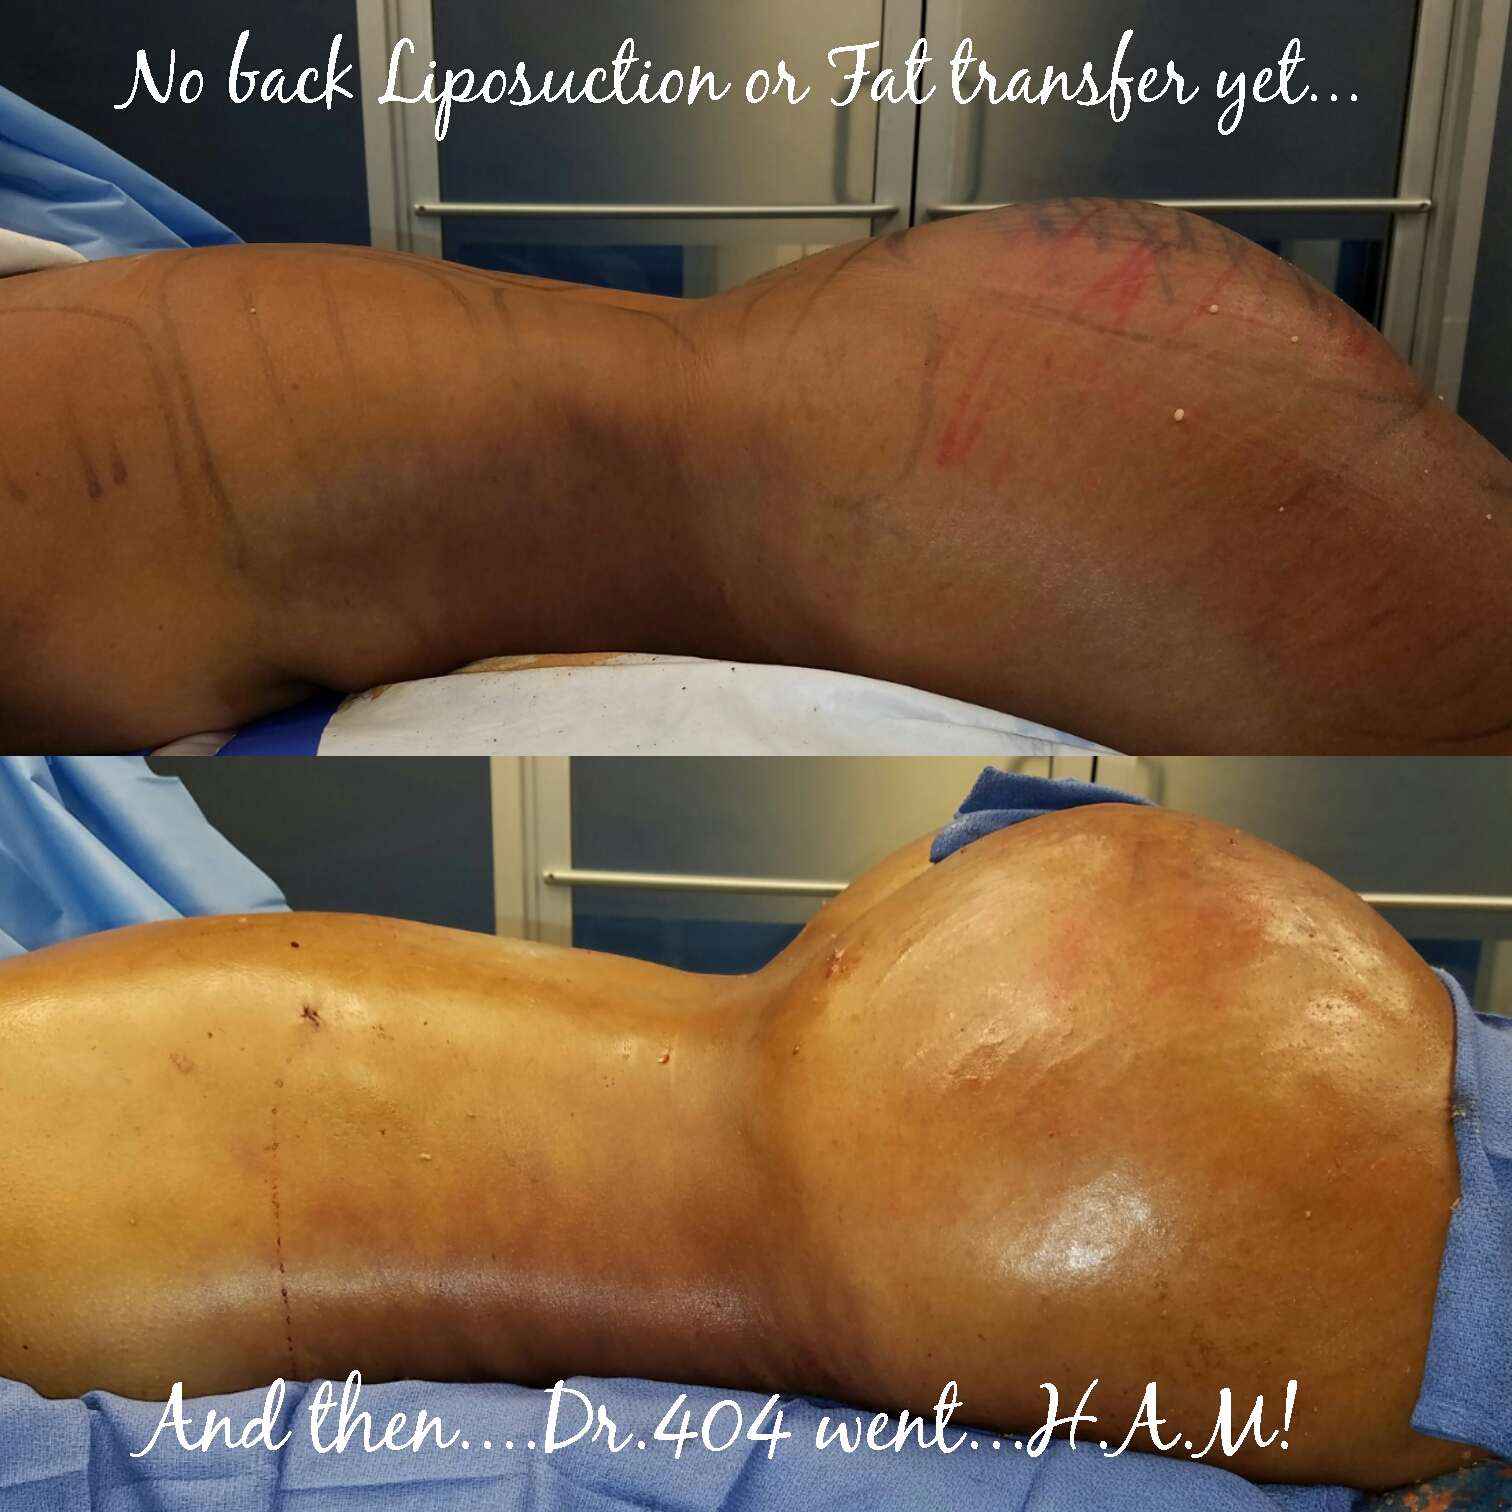 atlanta liposuction, liposuction atlanta, liposuction plastic surgery, plastic surgeon liposuction, brazilian butt lift, BBl, buttock augmentation, fat transfer